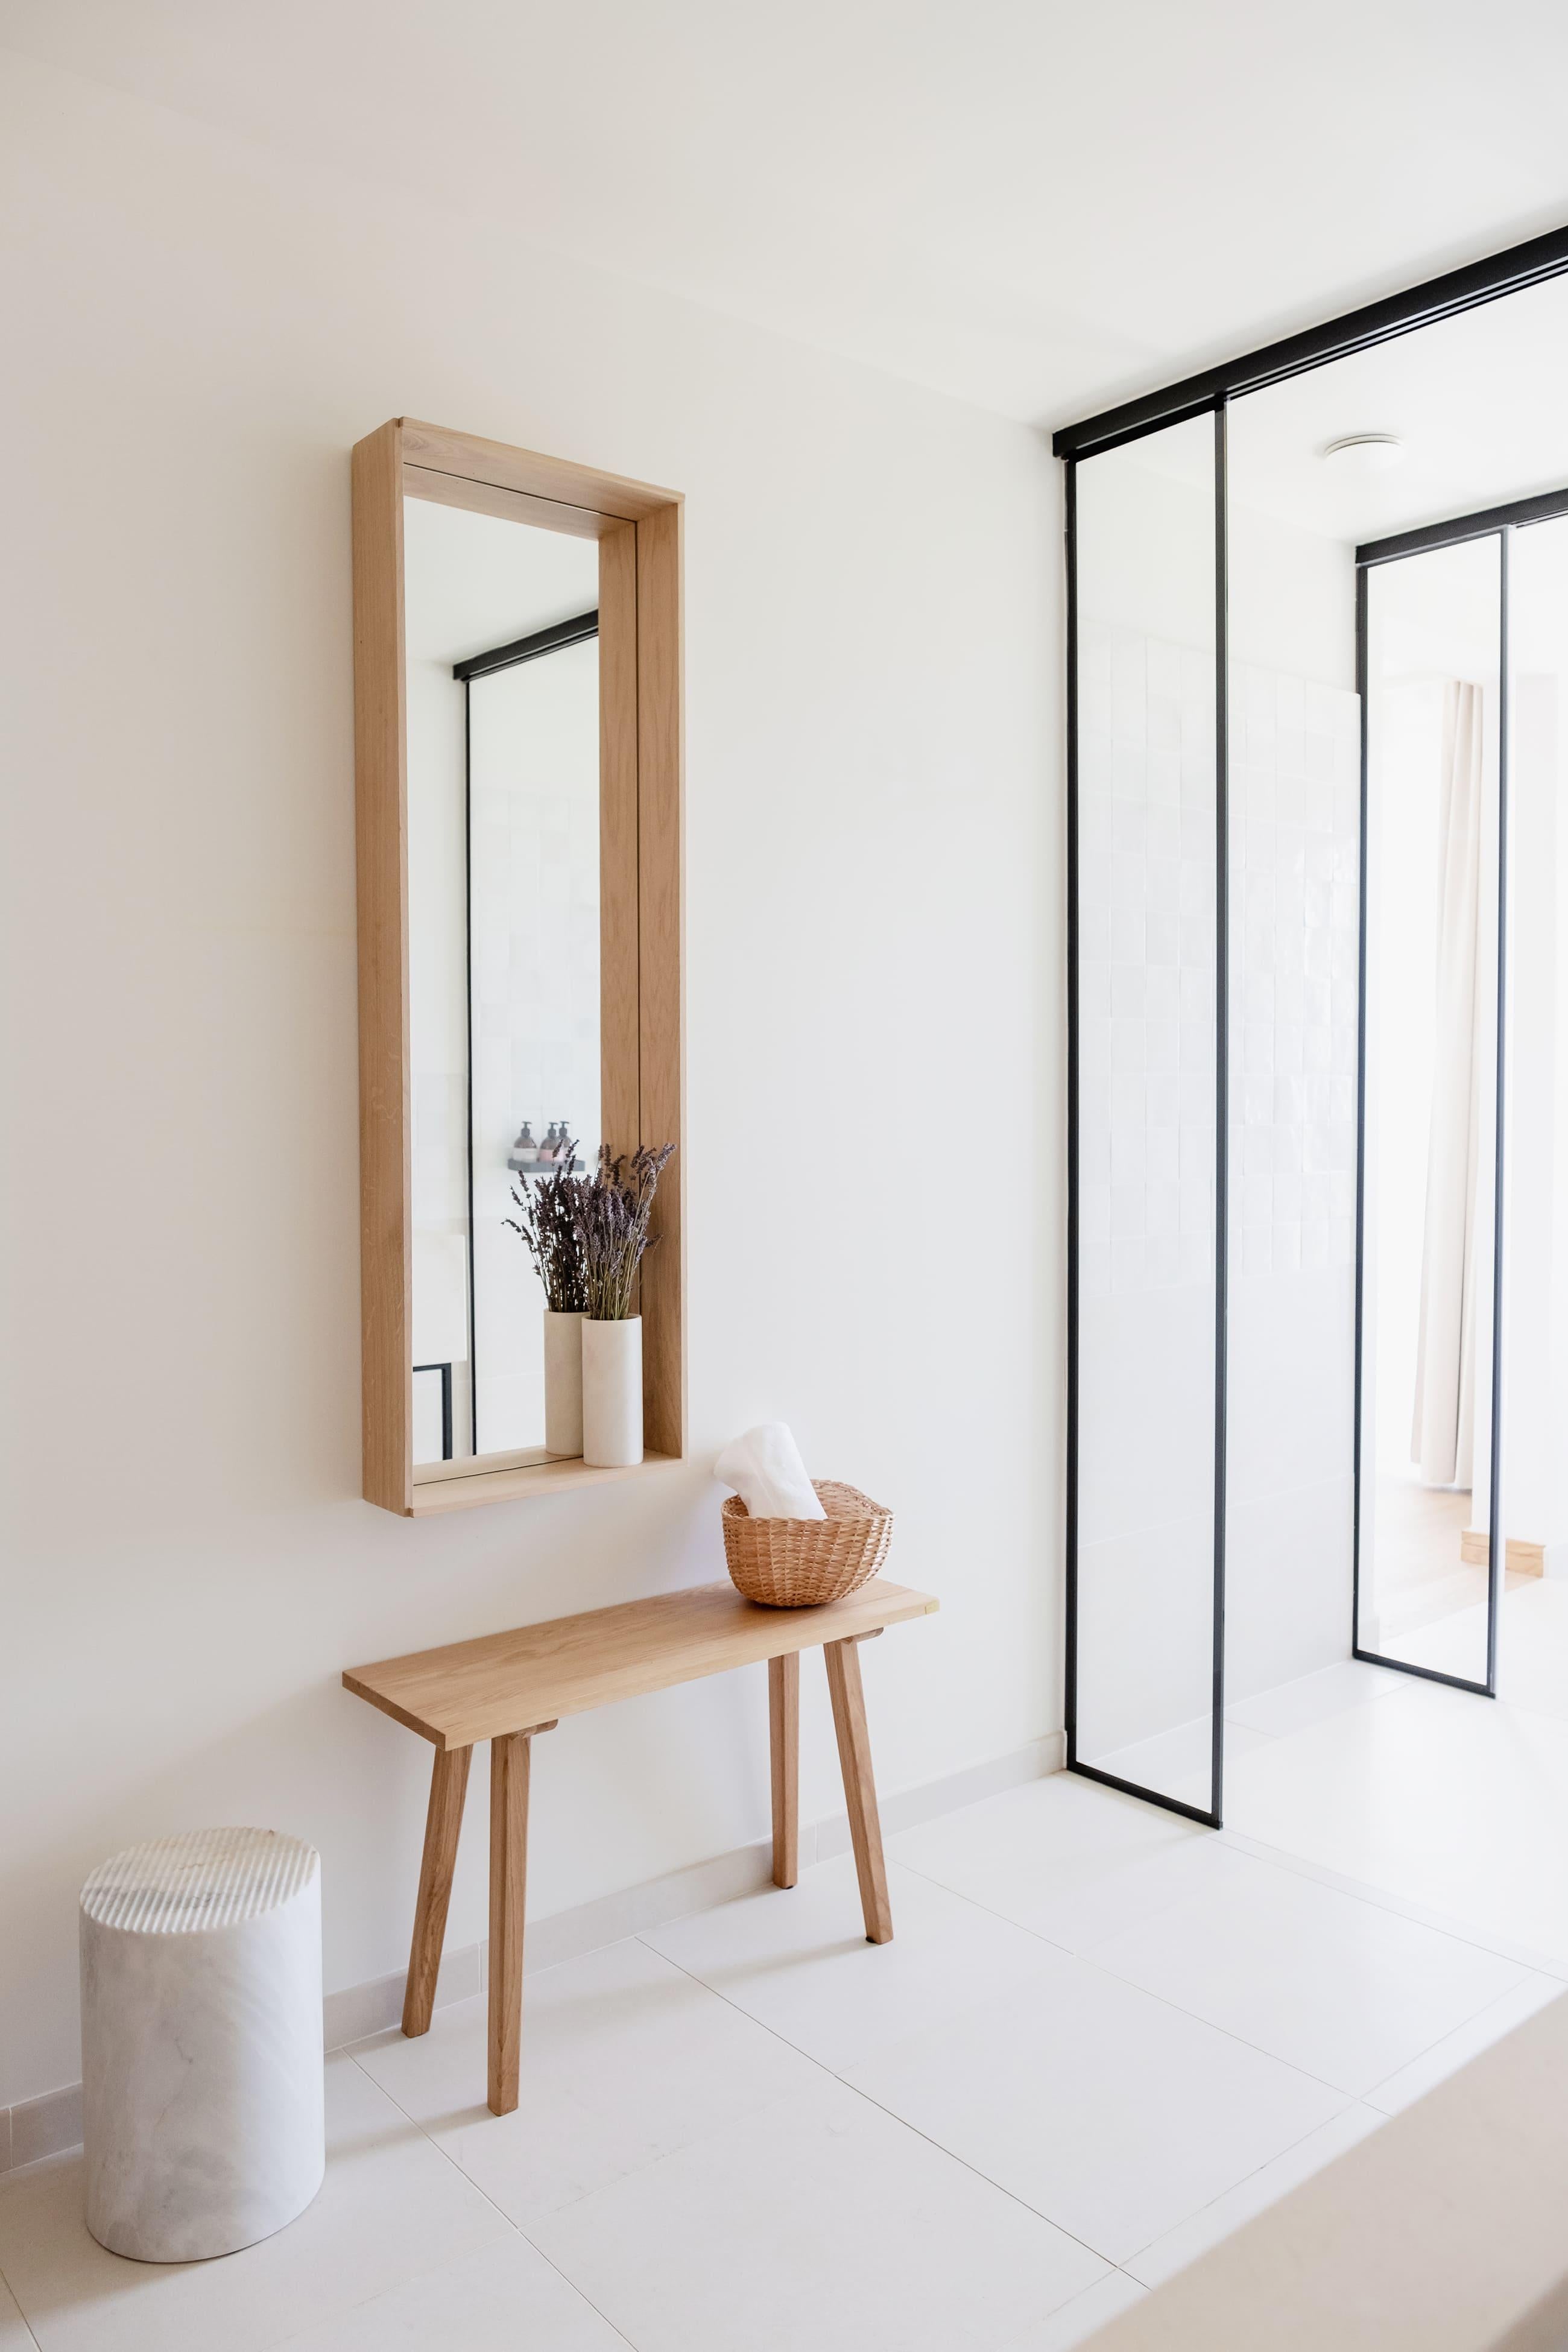 Campo est un miroir polyvalent qui ouvre une fenêtre sur des temps simples. Un design minimal et honnête qui offre une grande variété d'utilisations.

Inspiré des caisses en bois traditionnelles utilisées sur les marchés au début des années 50, le